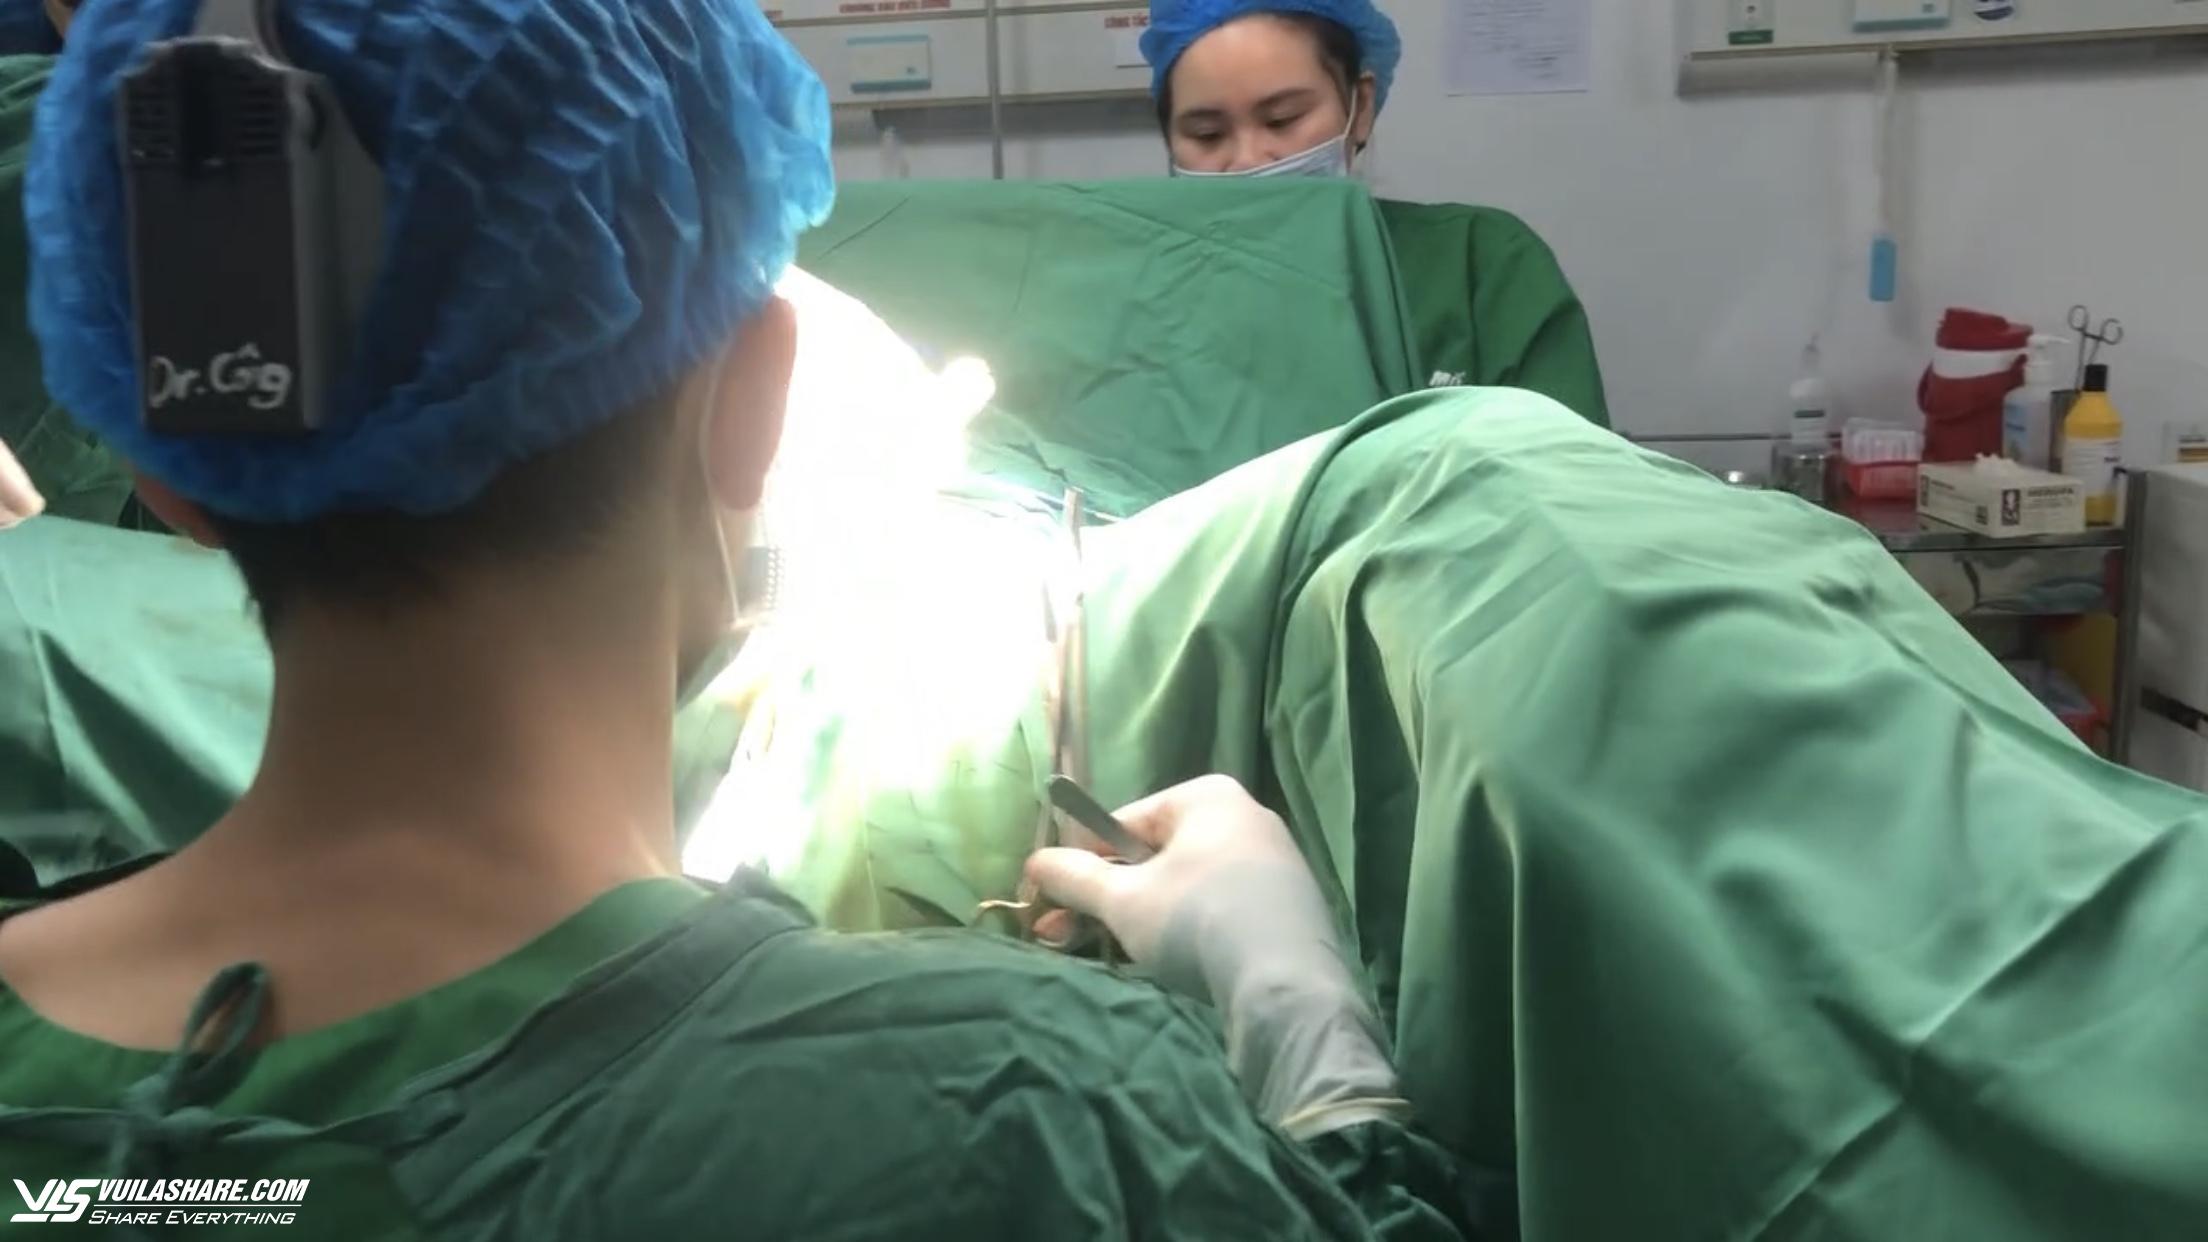 Yêu cầu Bệnh viện thẩm mỹ Sao Hàn tạm ngưng ngay phẫu thuật - Ảnh 1.